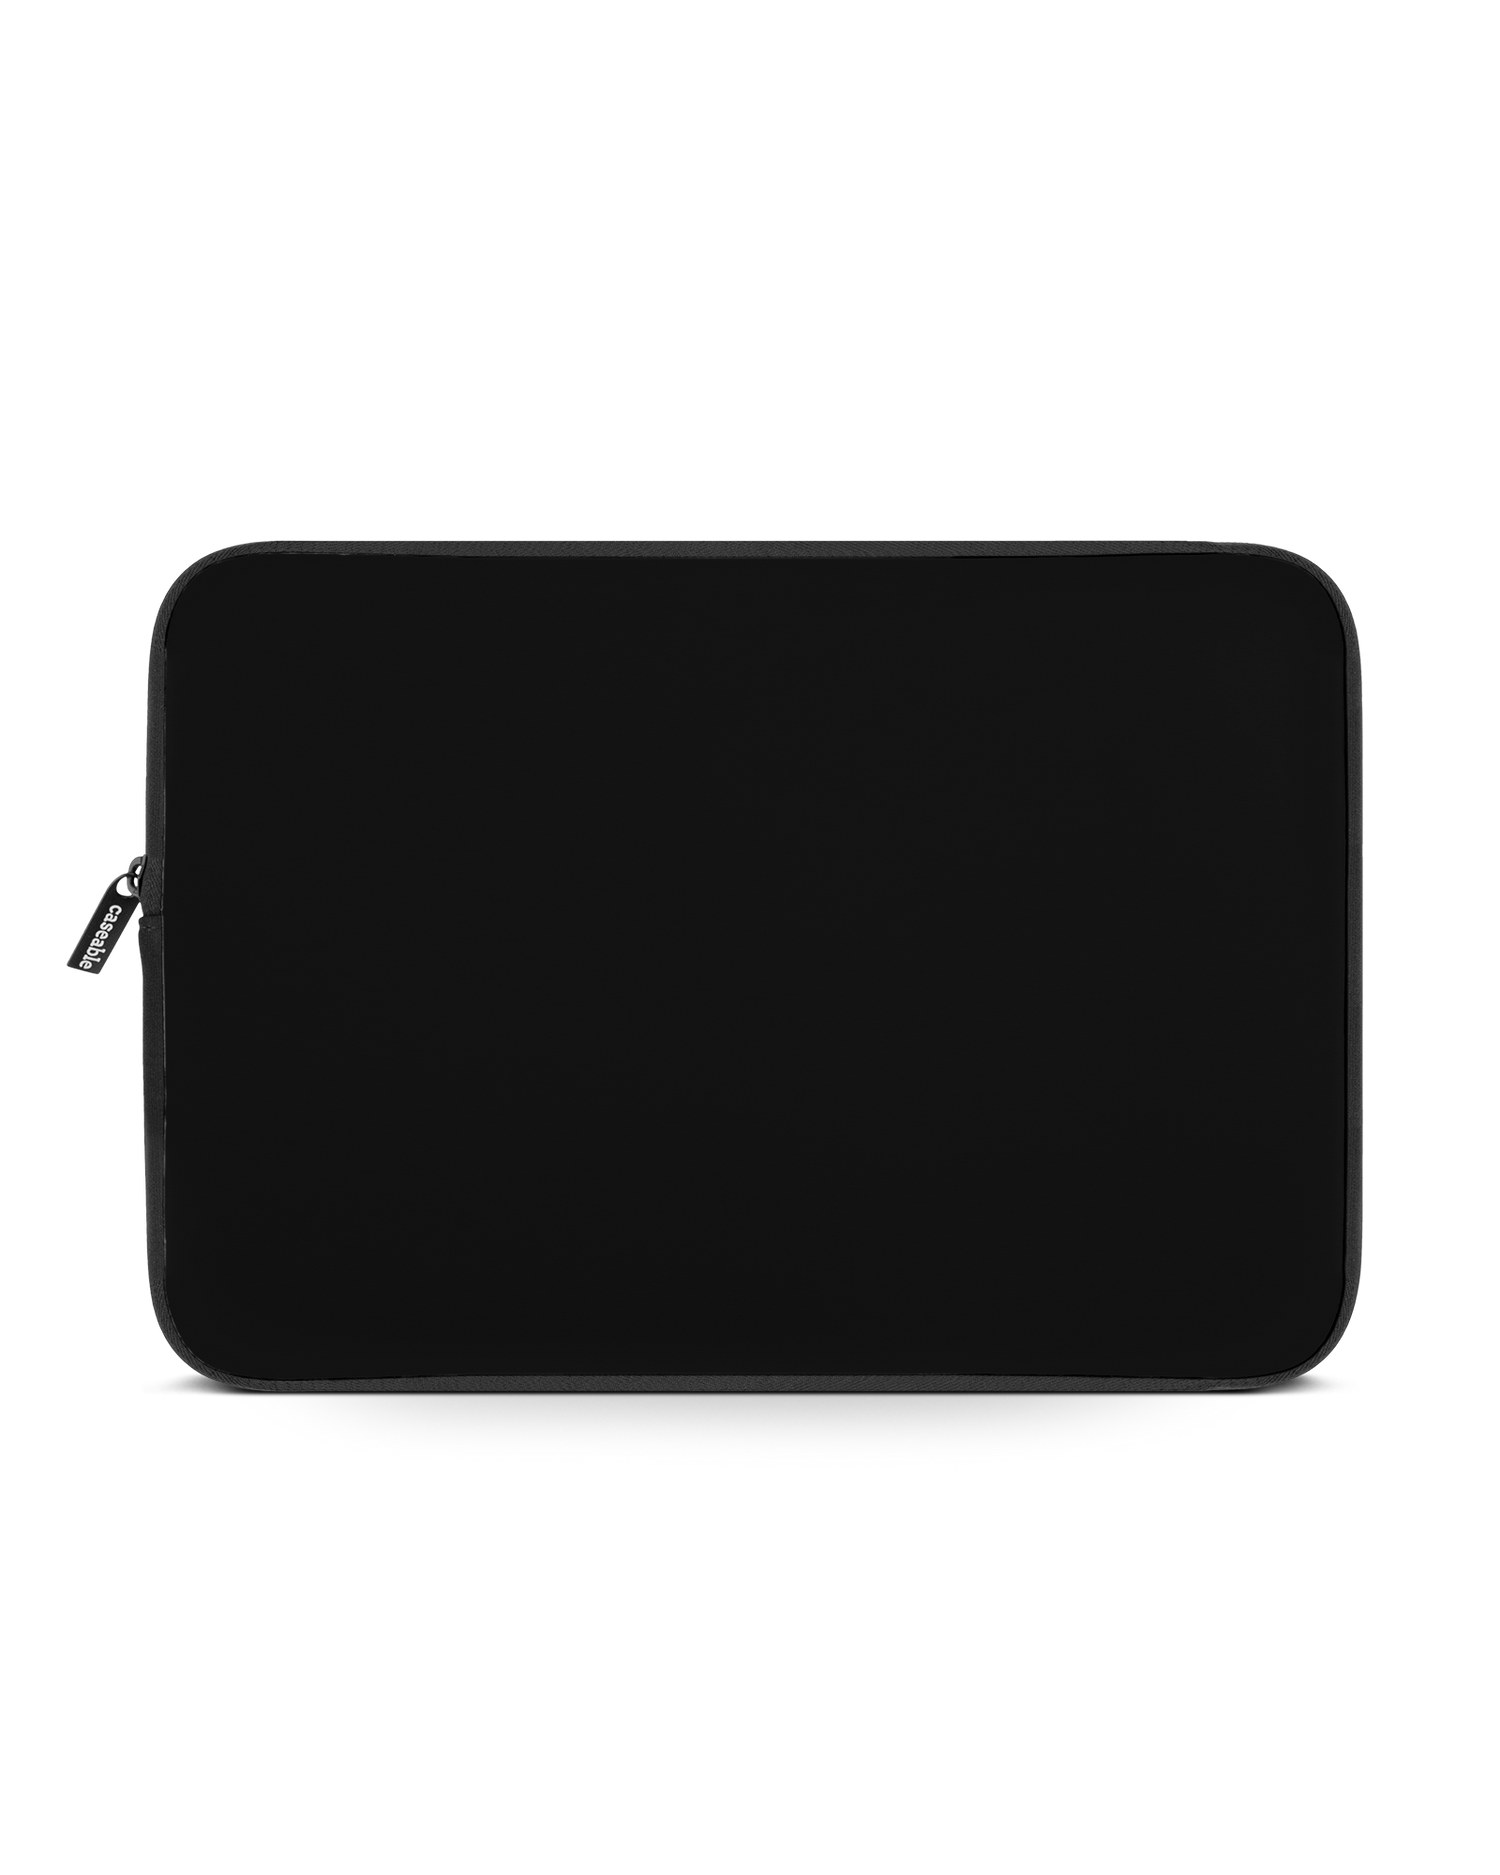 BLACK Laptophülle 15-16 Zoll: Vorderansicht